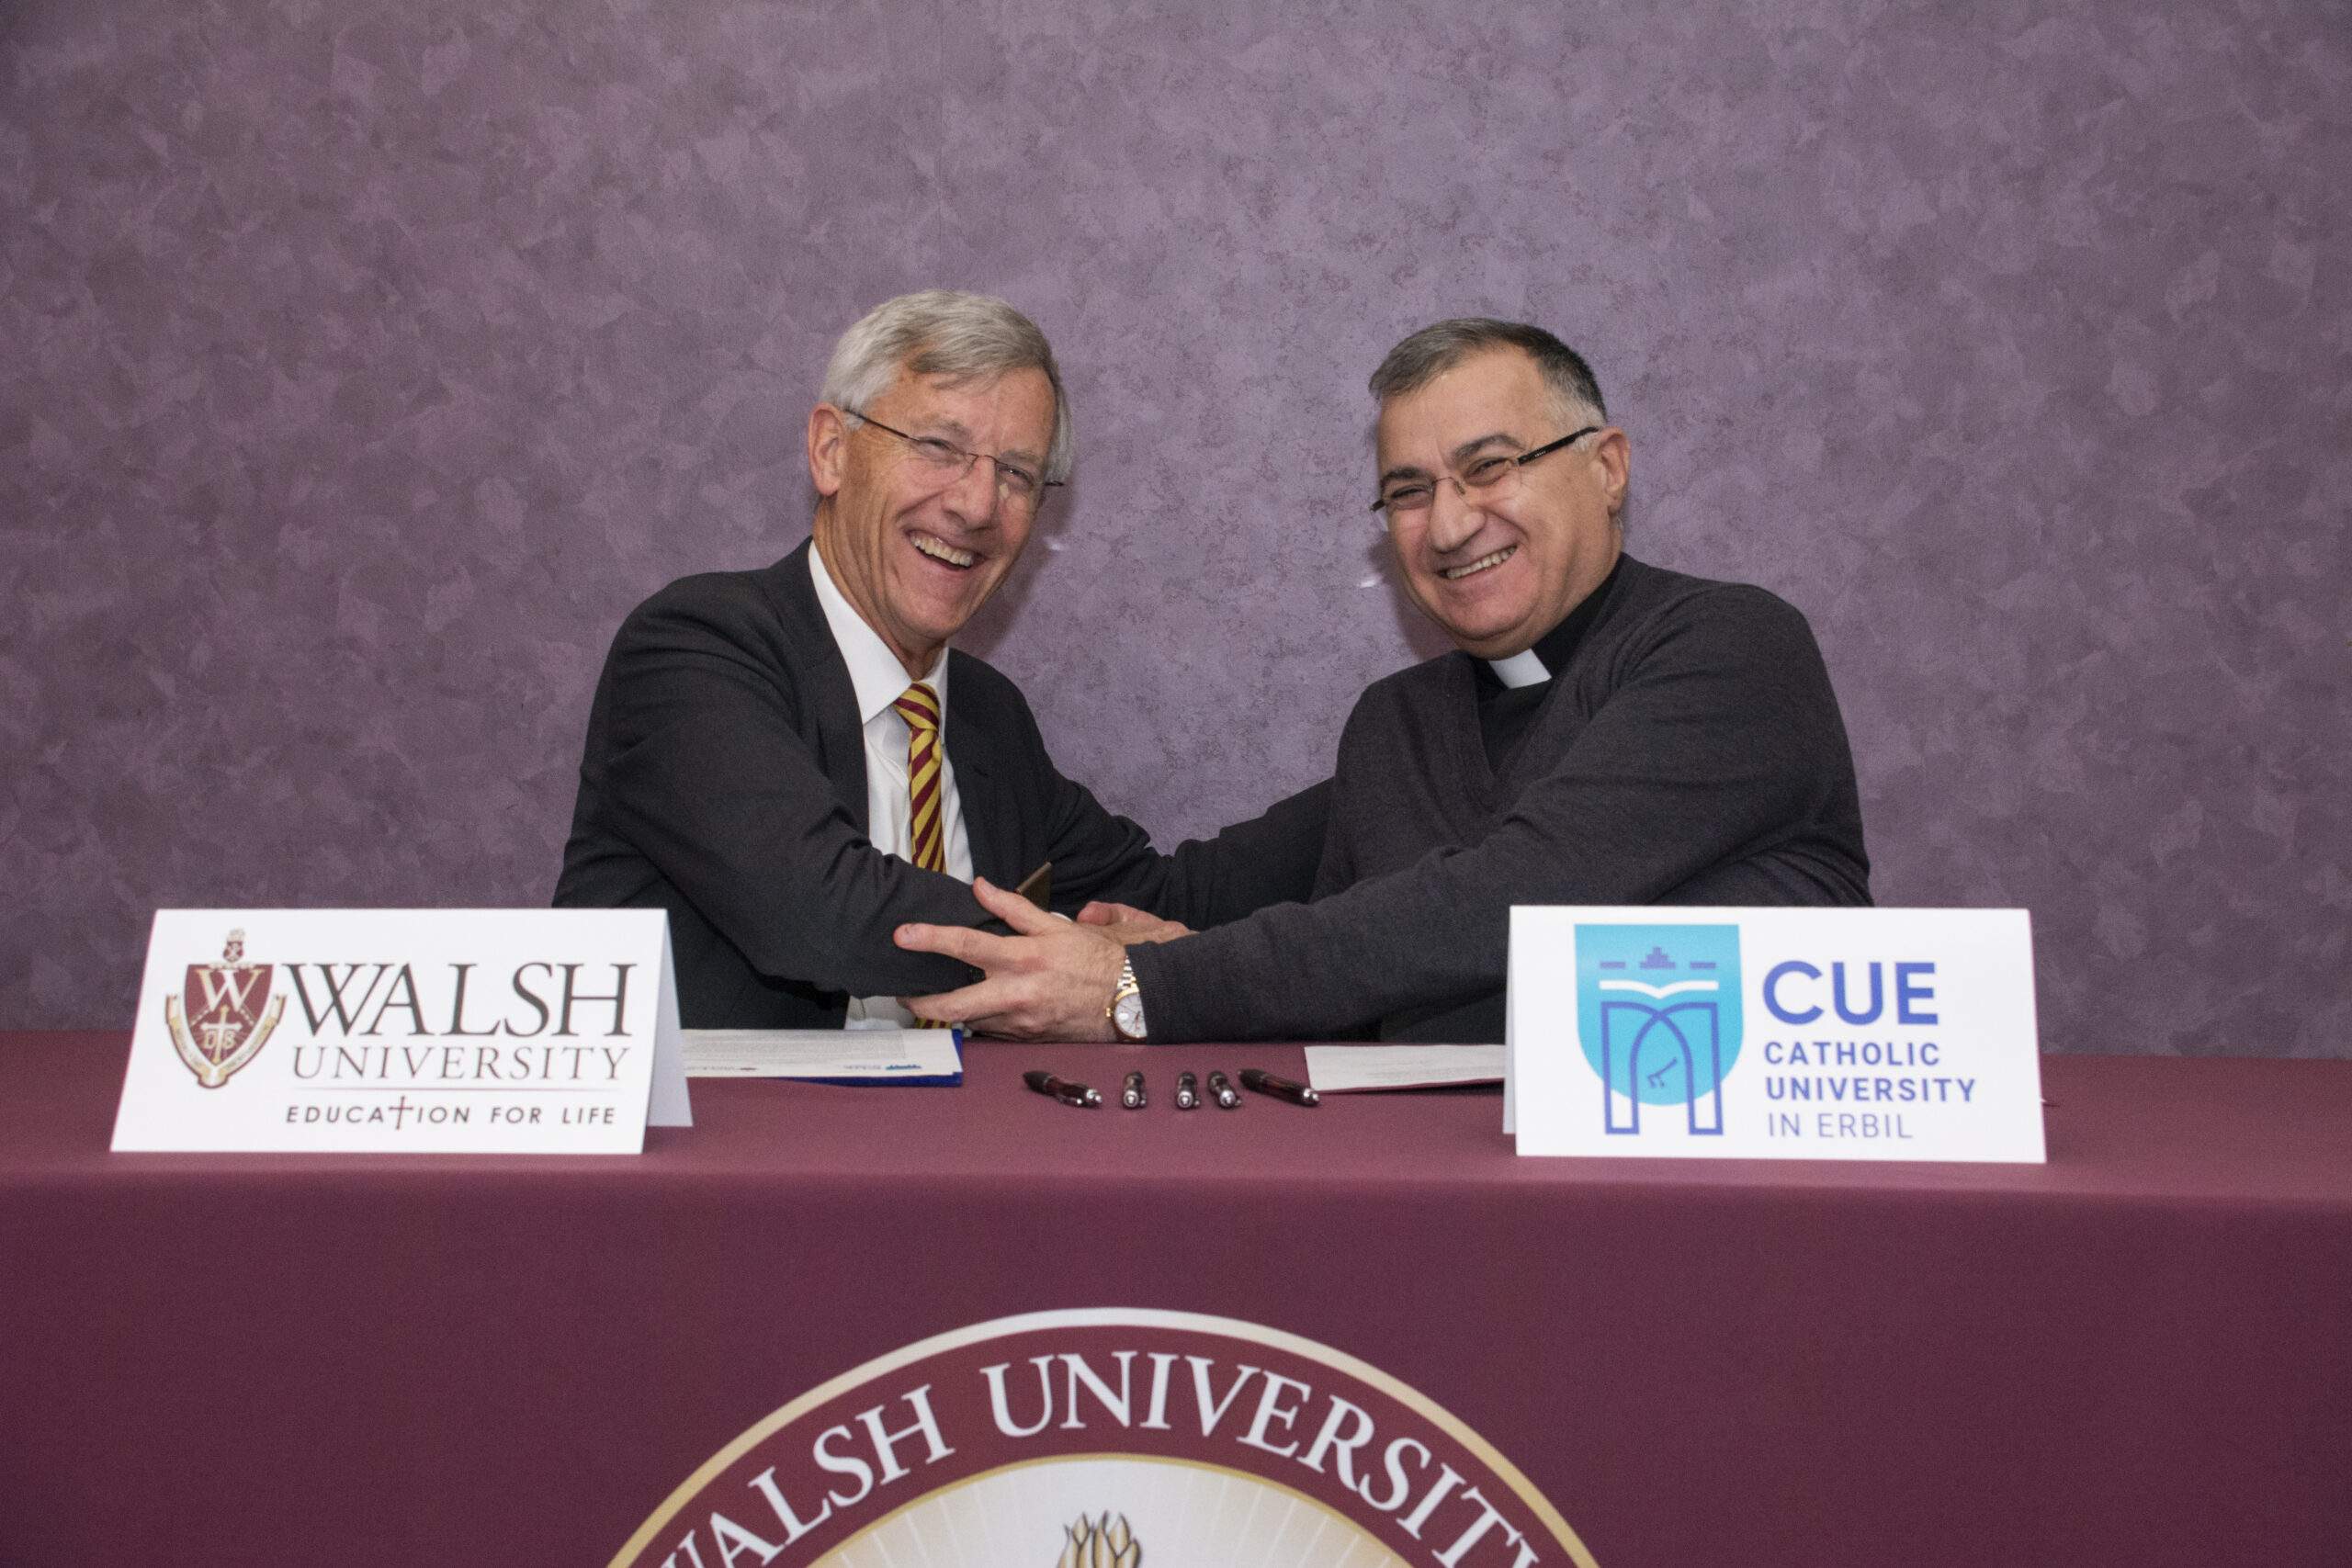 President Collins and Archbishop Warda sign a Memorandum of Understanding between their two universities.